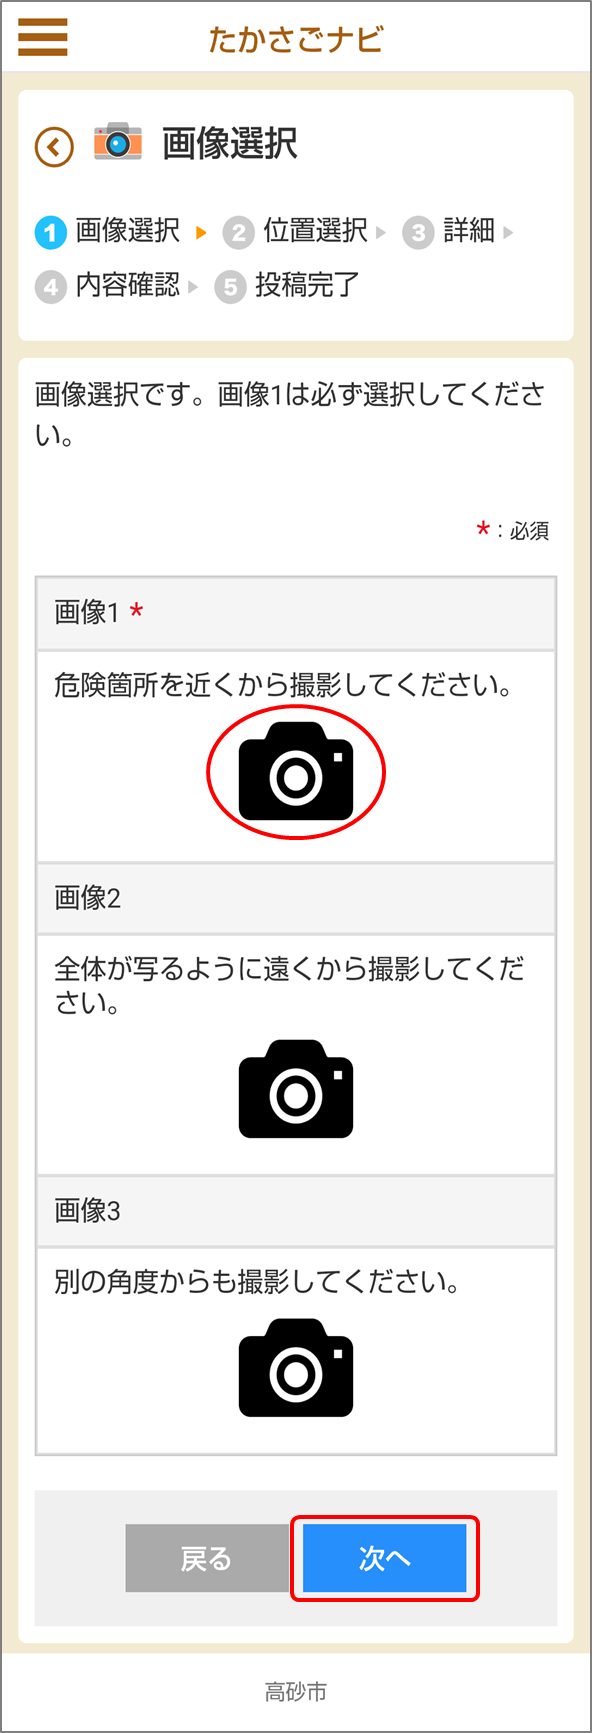 たかさごナビのアプリで表示されたカメラのマークとタップ位置「次へ」を示した画像選択画面